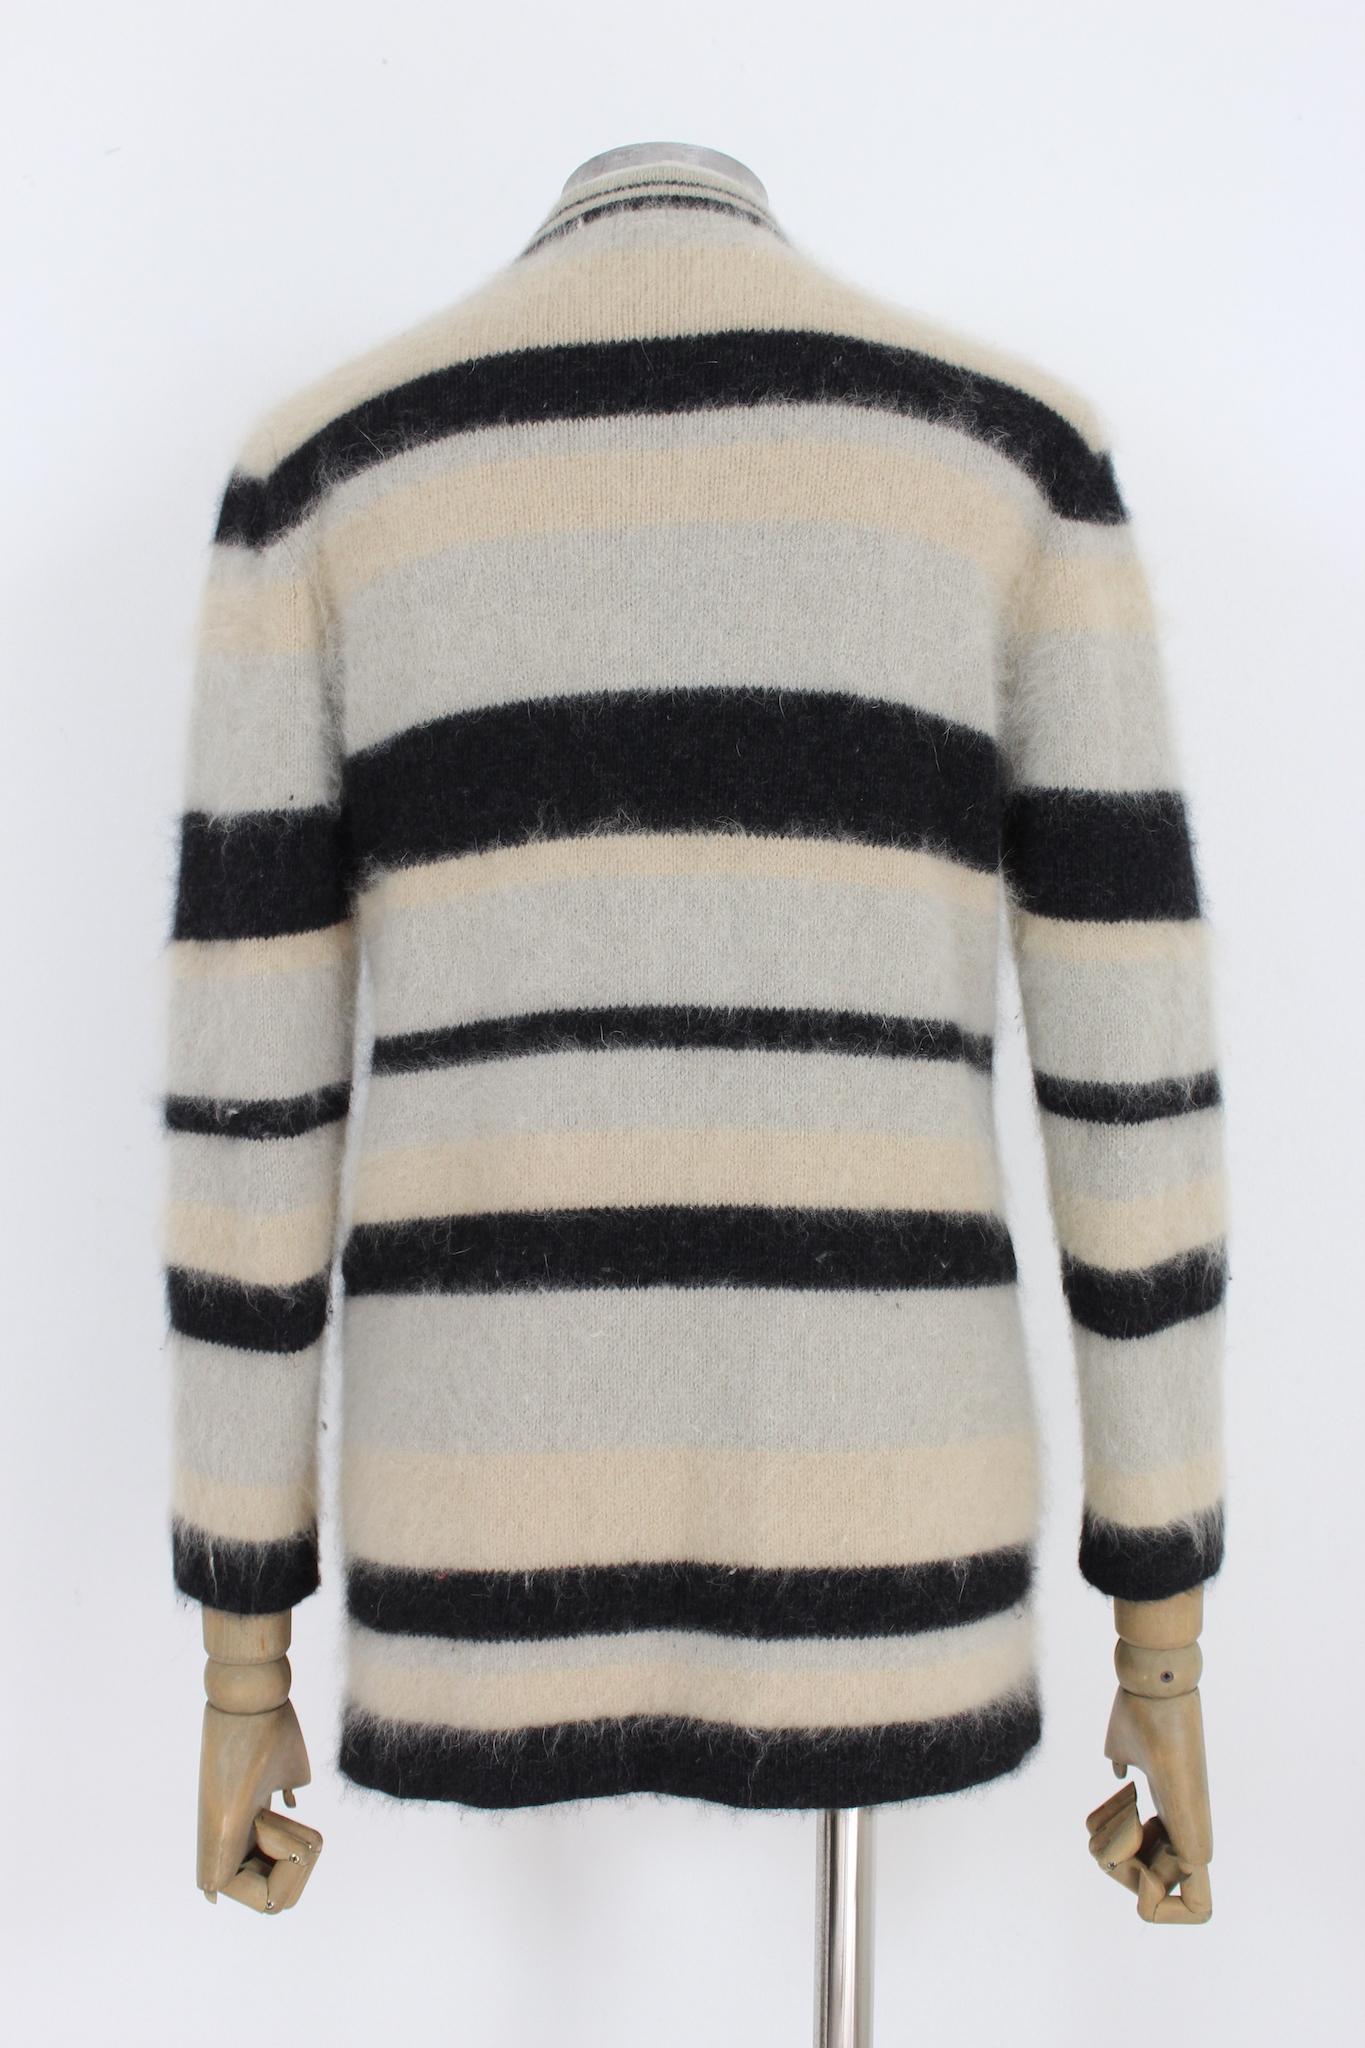 Valentino Vintage 90er Jahre weiche Wolle Pullover Jacke. Beige und schwarz gestreifte Strickjacke, an den Hüften befinden sich Schlaufen, um einen Gürtel anlegen zu können. Stoff aus Angora und Wolle. Hergestellt in Italien.

Größe: 42 It 8 Us 10